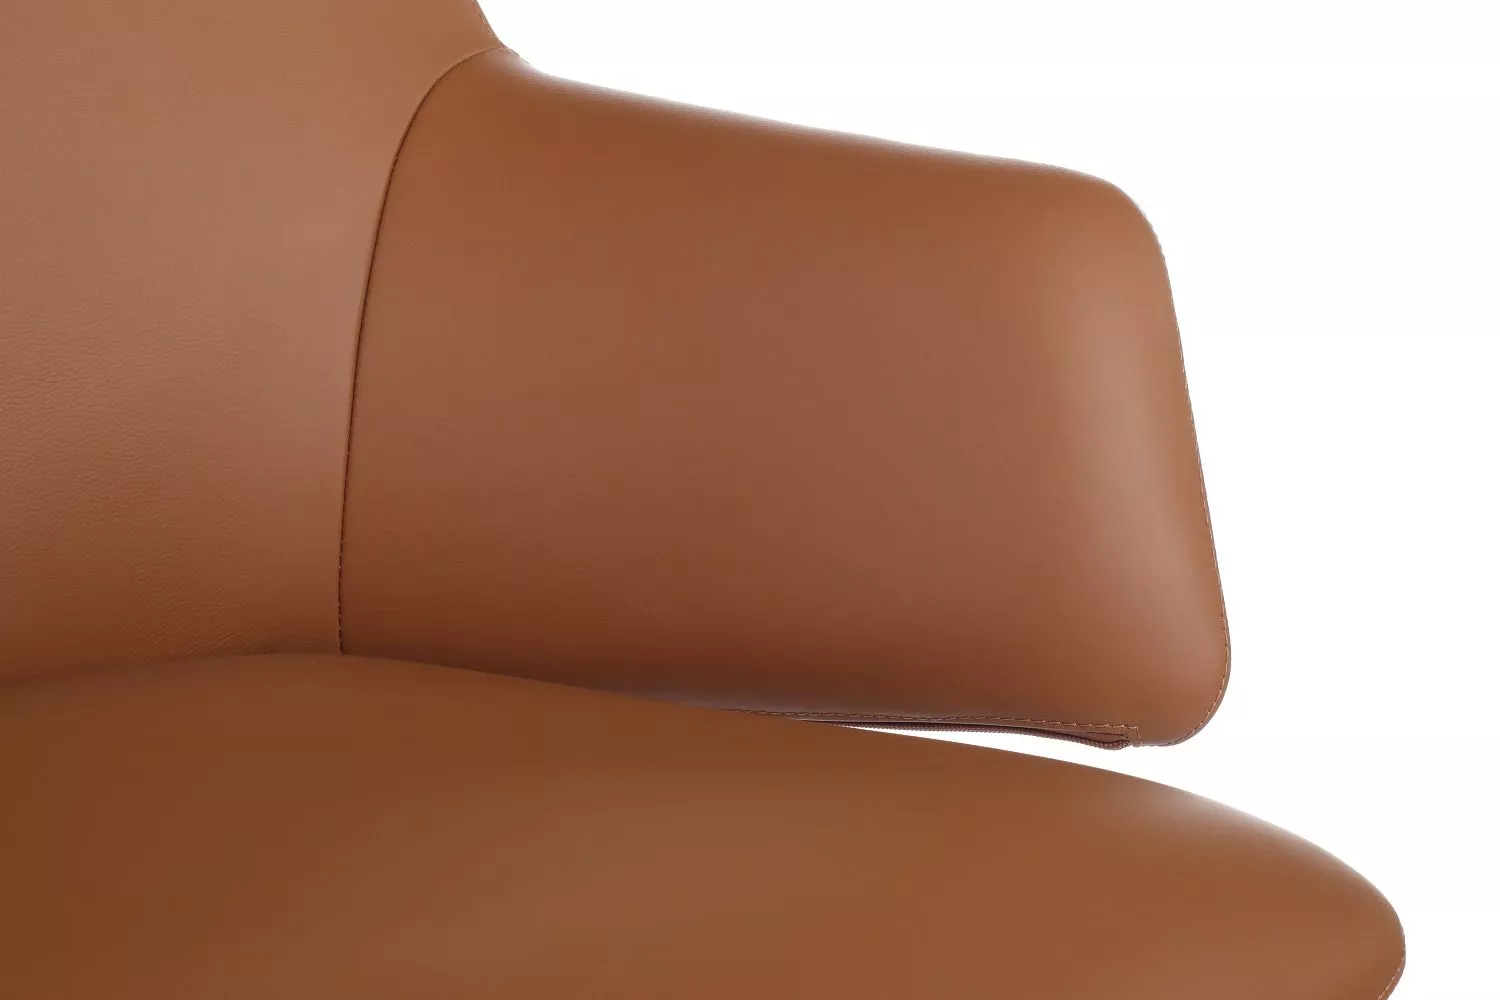 Кресло RIVA DESIGN Spell-M (В1719) светло-коричневый